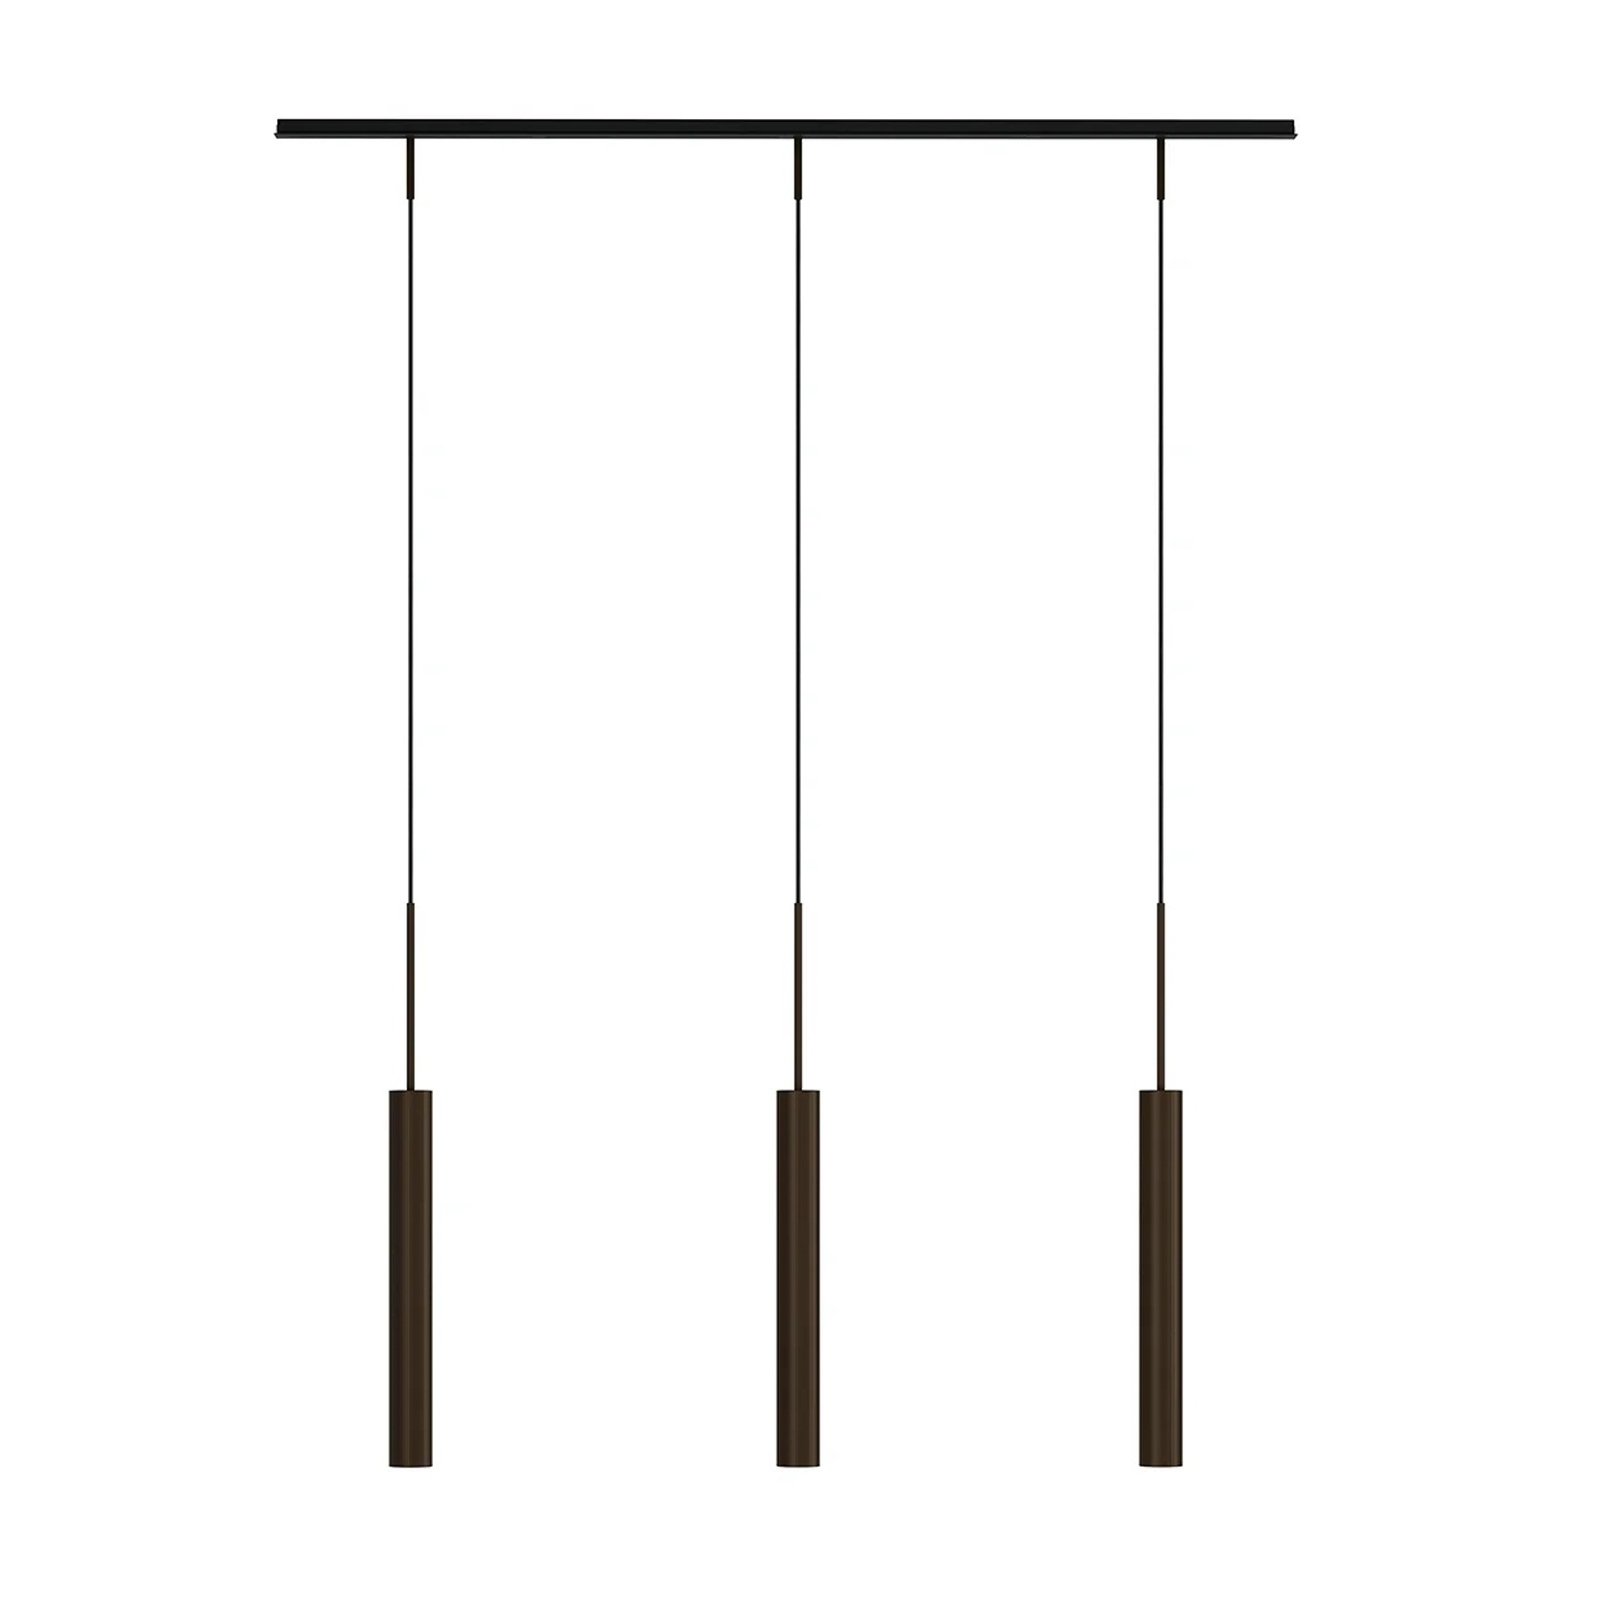 Audo hanglamp Tubulaire Rail, 3-lamps, bronskleurig, aluminium